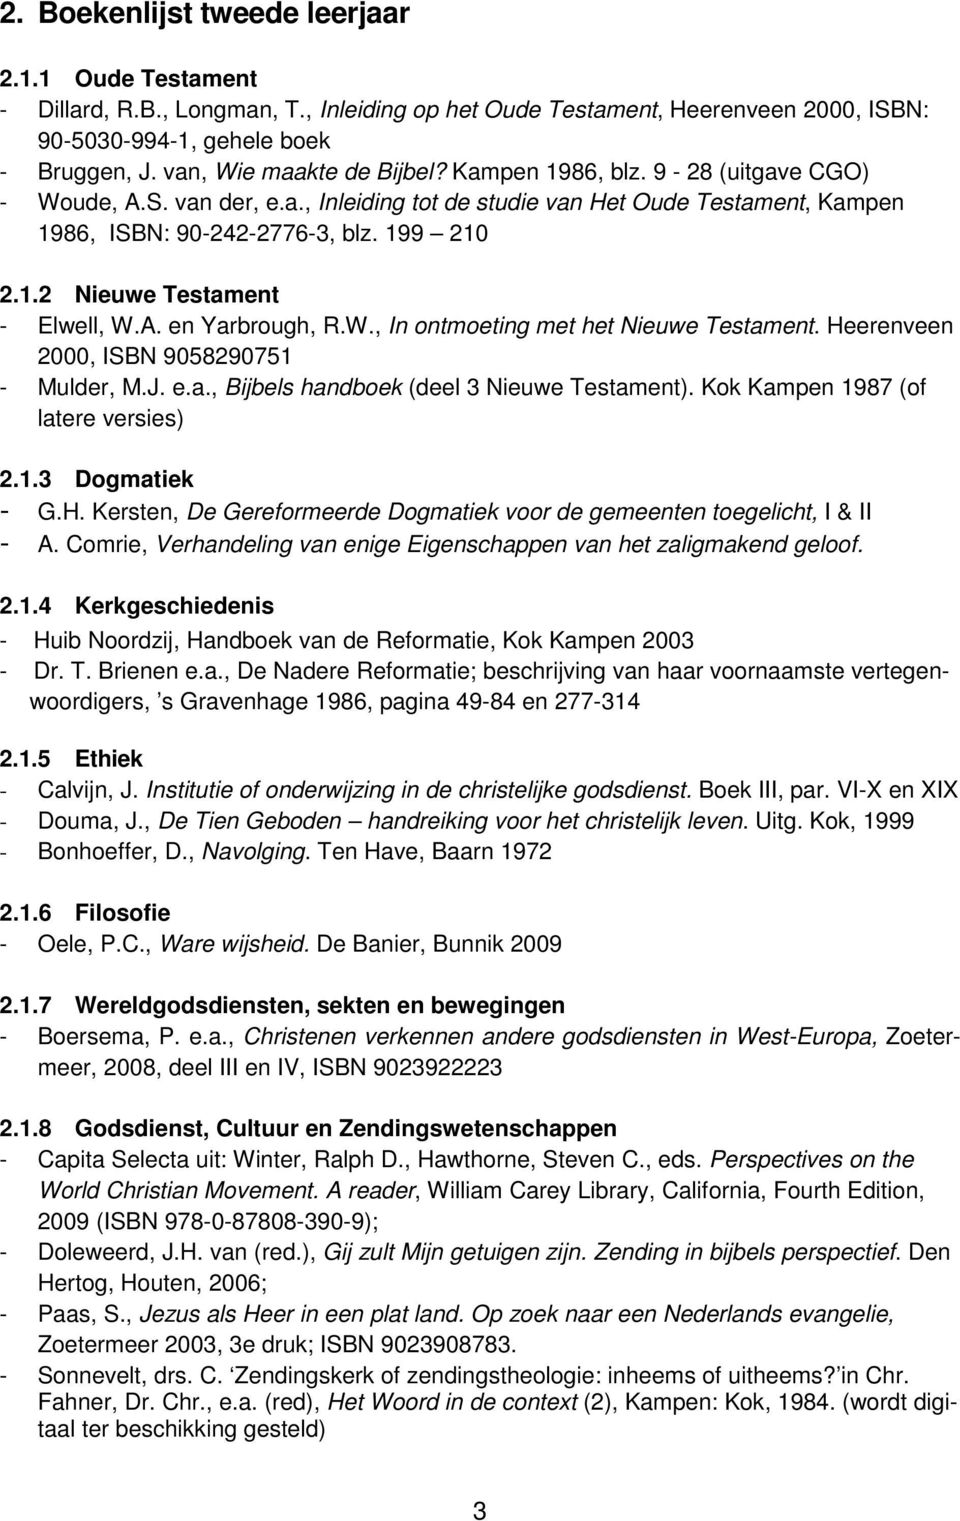 A. en Yarbrough, R.W., In ontmoeting met het Nieuwe Testament. Heerenveen 2000, ISBN 9058290751 - Mulder, M.J. e.a., Bijbels handboek (deel 3 Nieuwe Testament). Kok Kampen 1987 (of latere versies) 2.